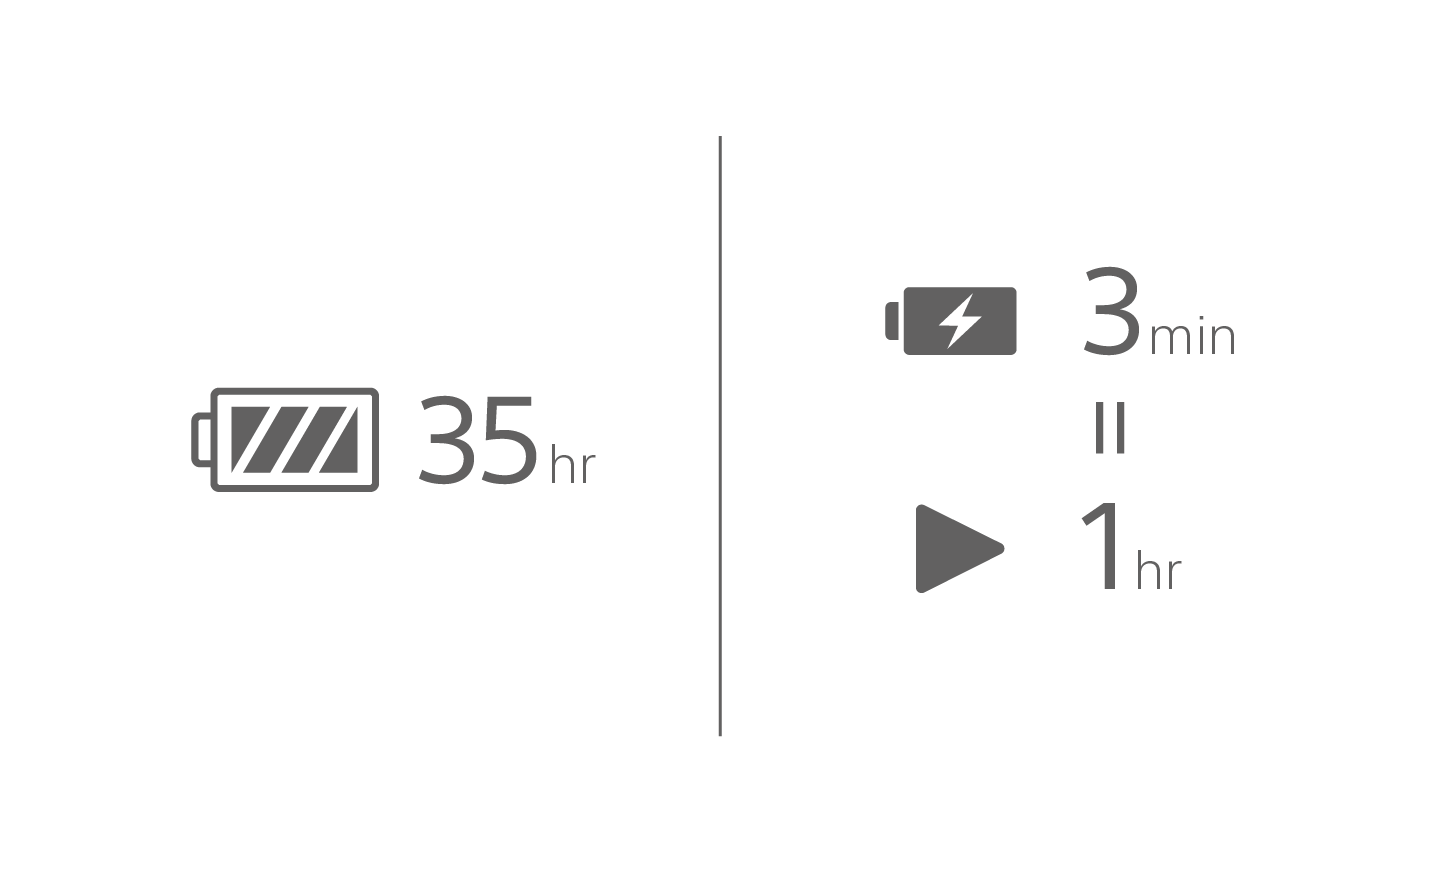 35시간이라는 텍스트가 표시된 배터리 아이콘 이미지, 3분이라는 텍스트가 표시된 배터리 충전 아이콘과 그 아래에 1시간이라는 텍스트가 표시된 재생 아이콘